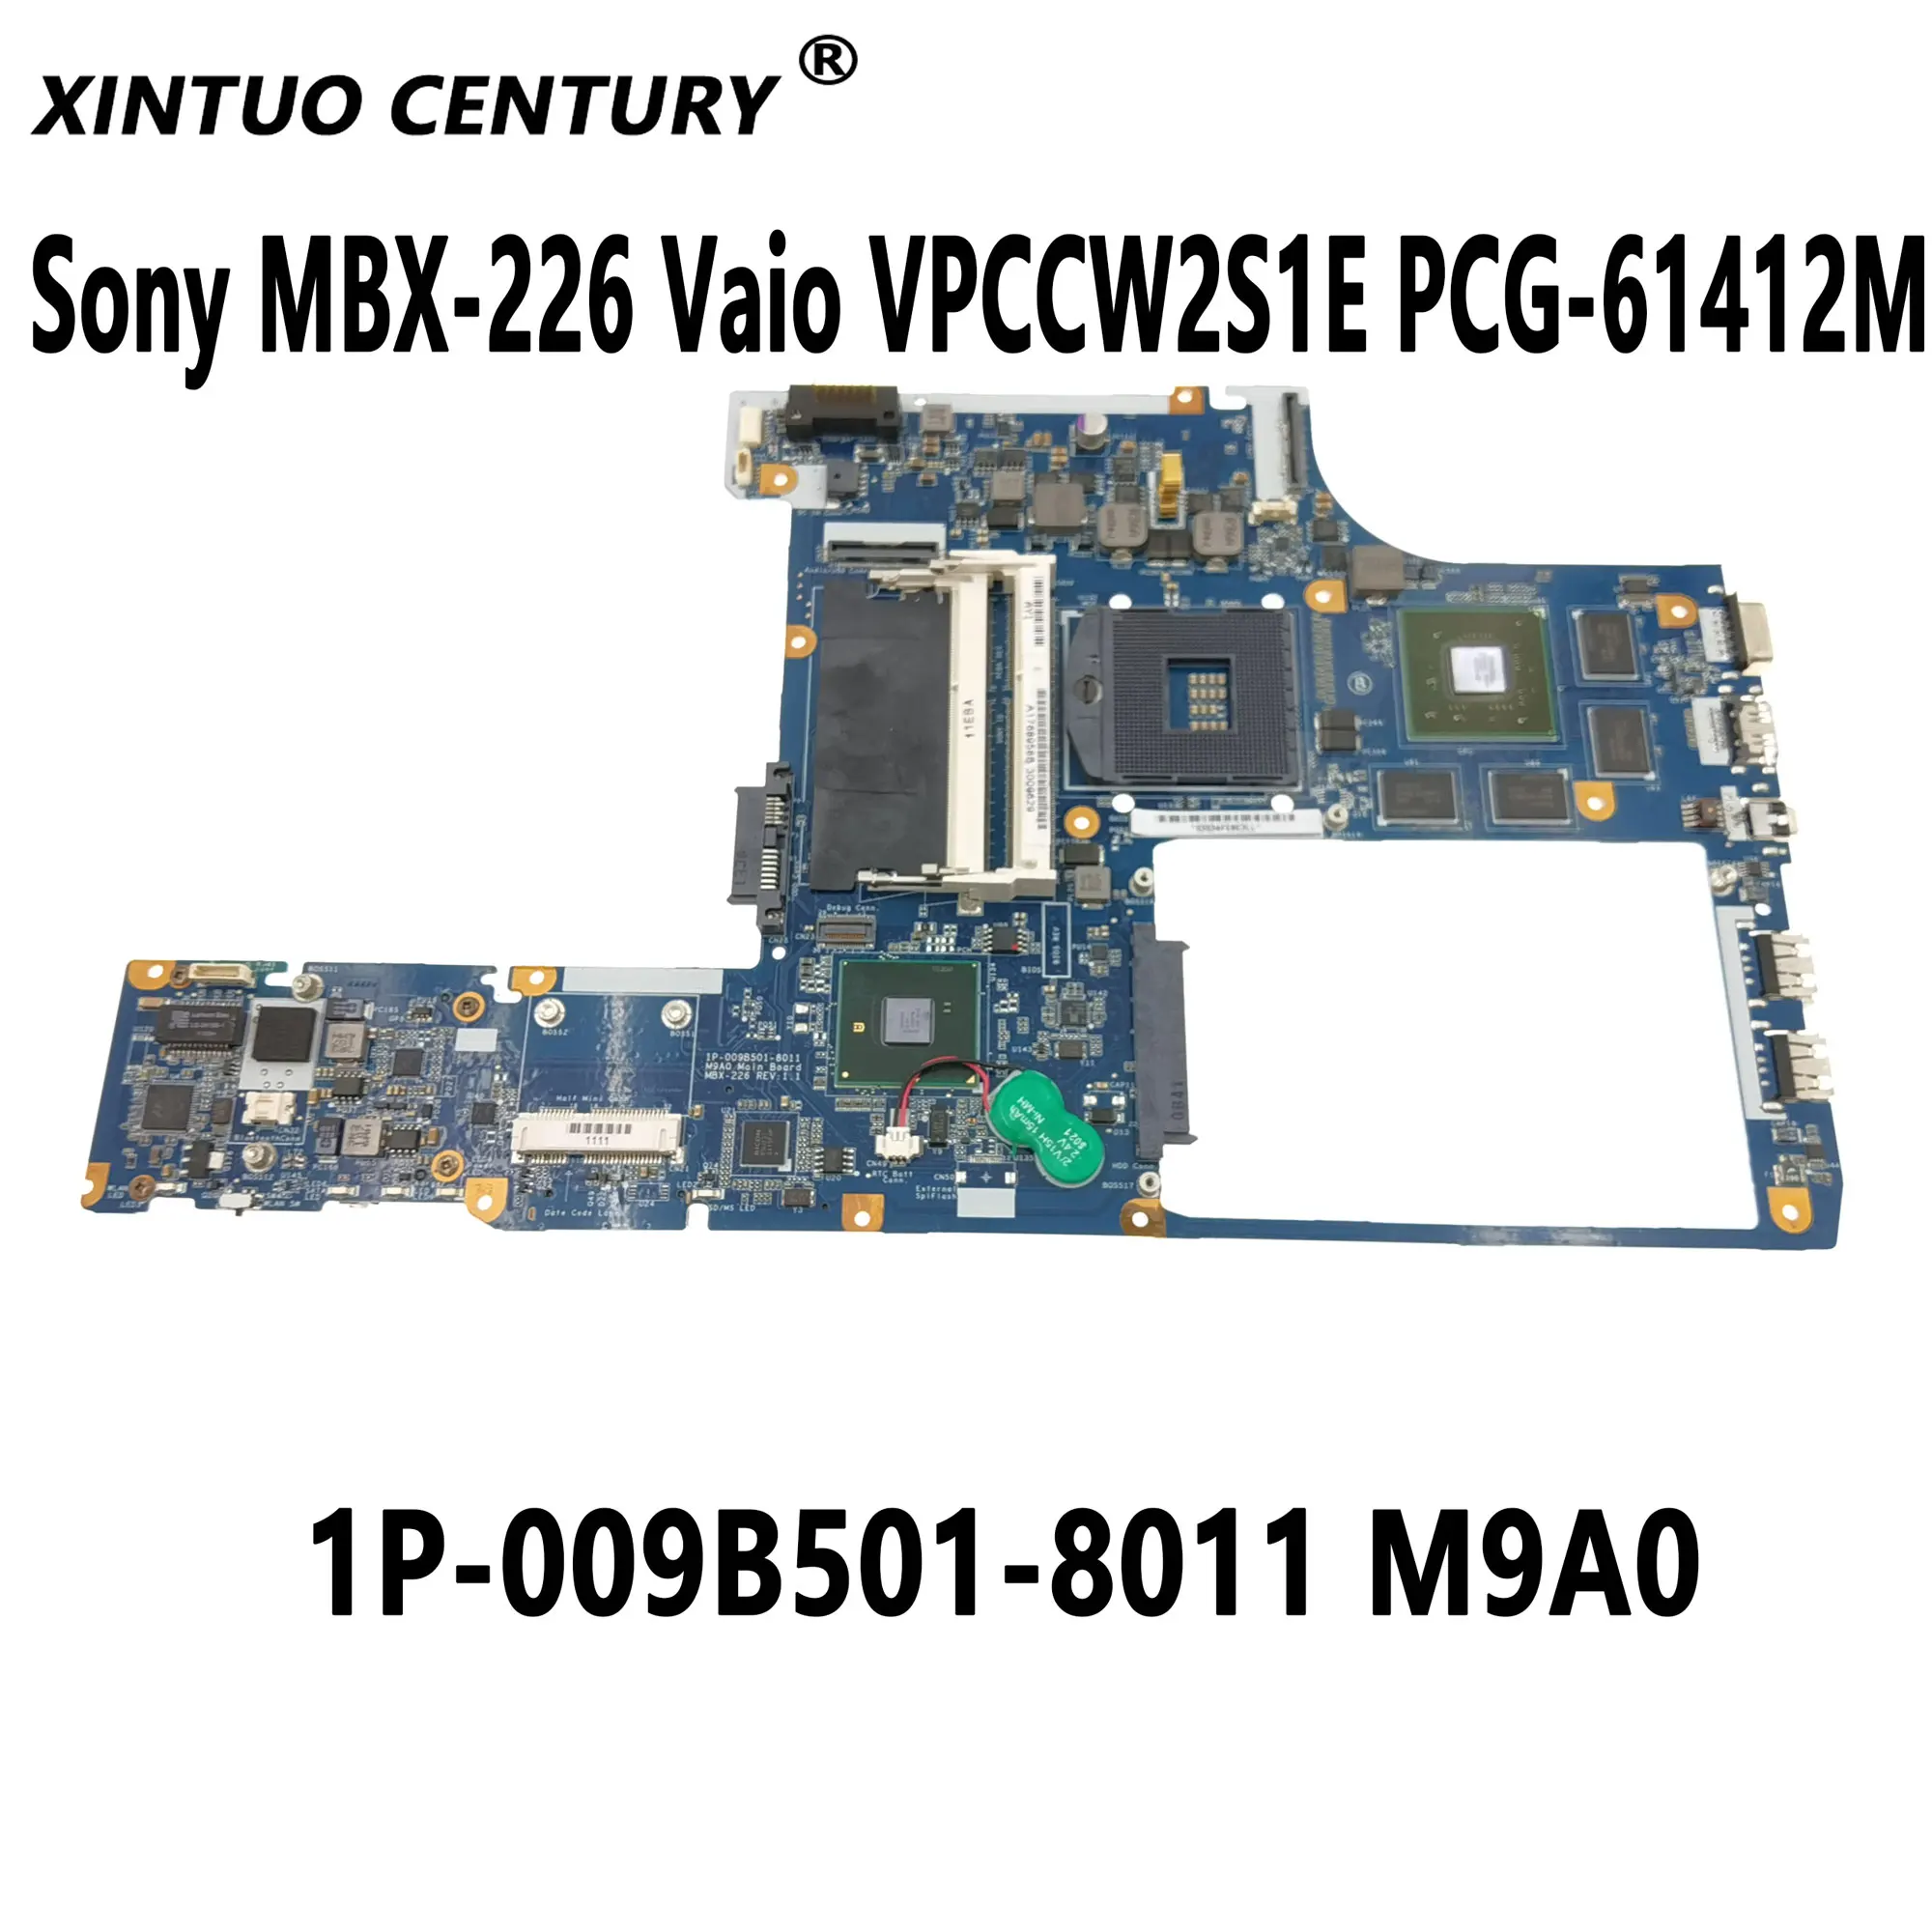 A1768958B A1768958A For Sony MBX-226 Vaio VPCCW2S1E PCG-61412M laptop motherboard 1P-009B501-8011 M9A0 W/ N11P-LP1-A3 100% Teste enlarge